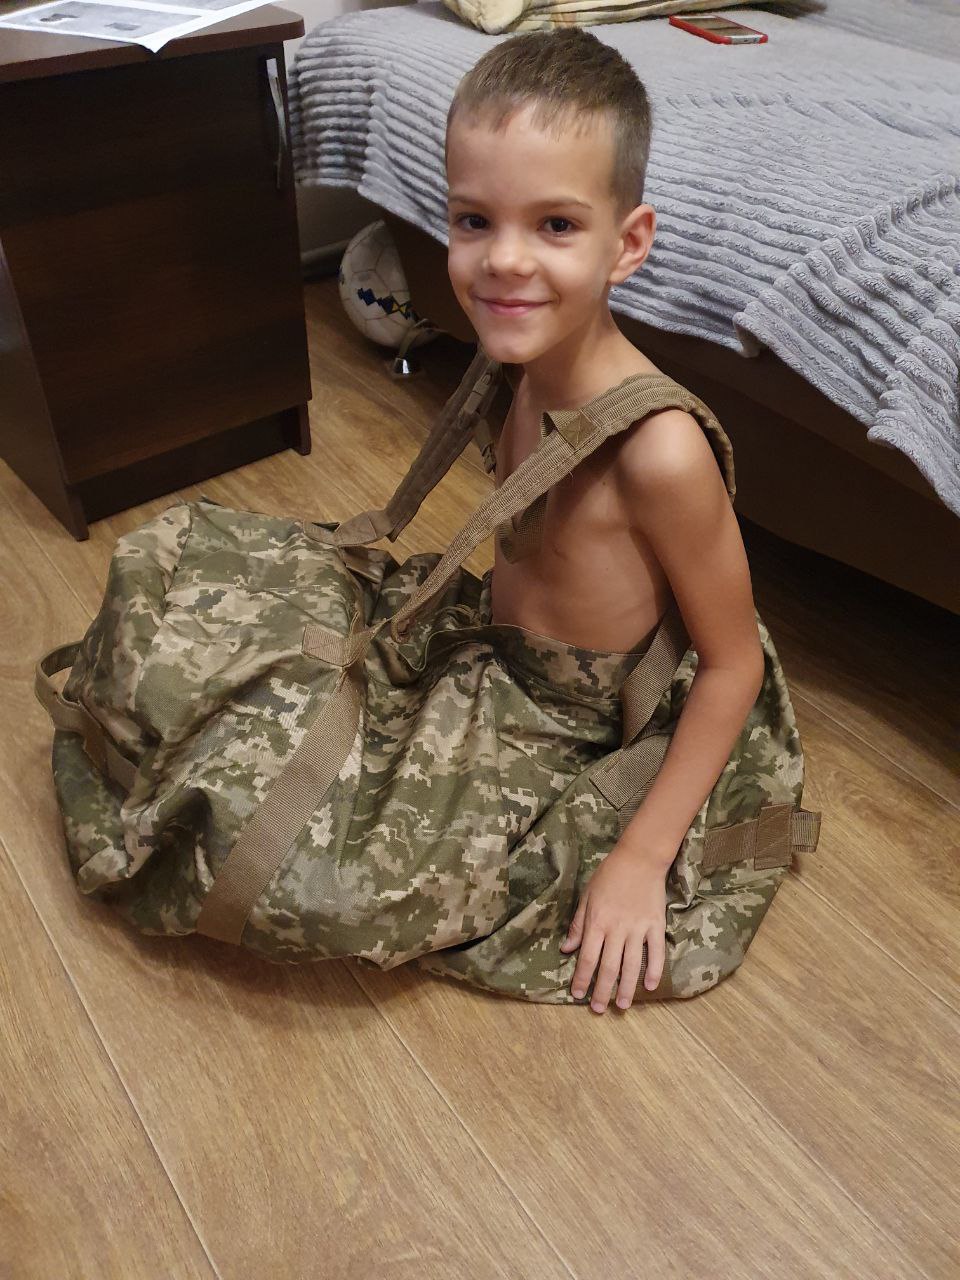 “Сын хочет стать военным, а я боюсь об этом и думать”: украинская защитница — о своем опыте материнства на расстоянии 4